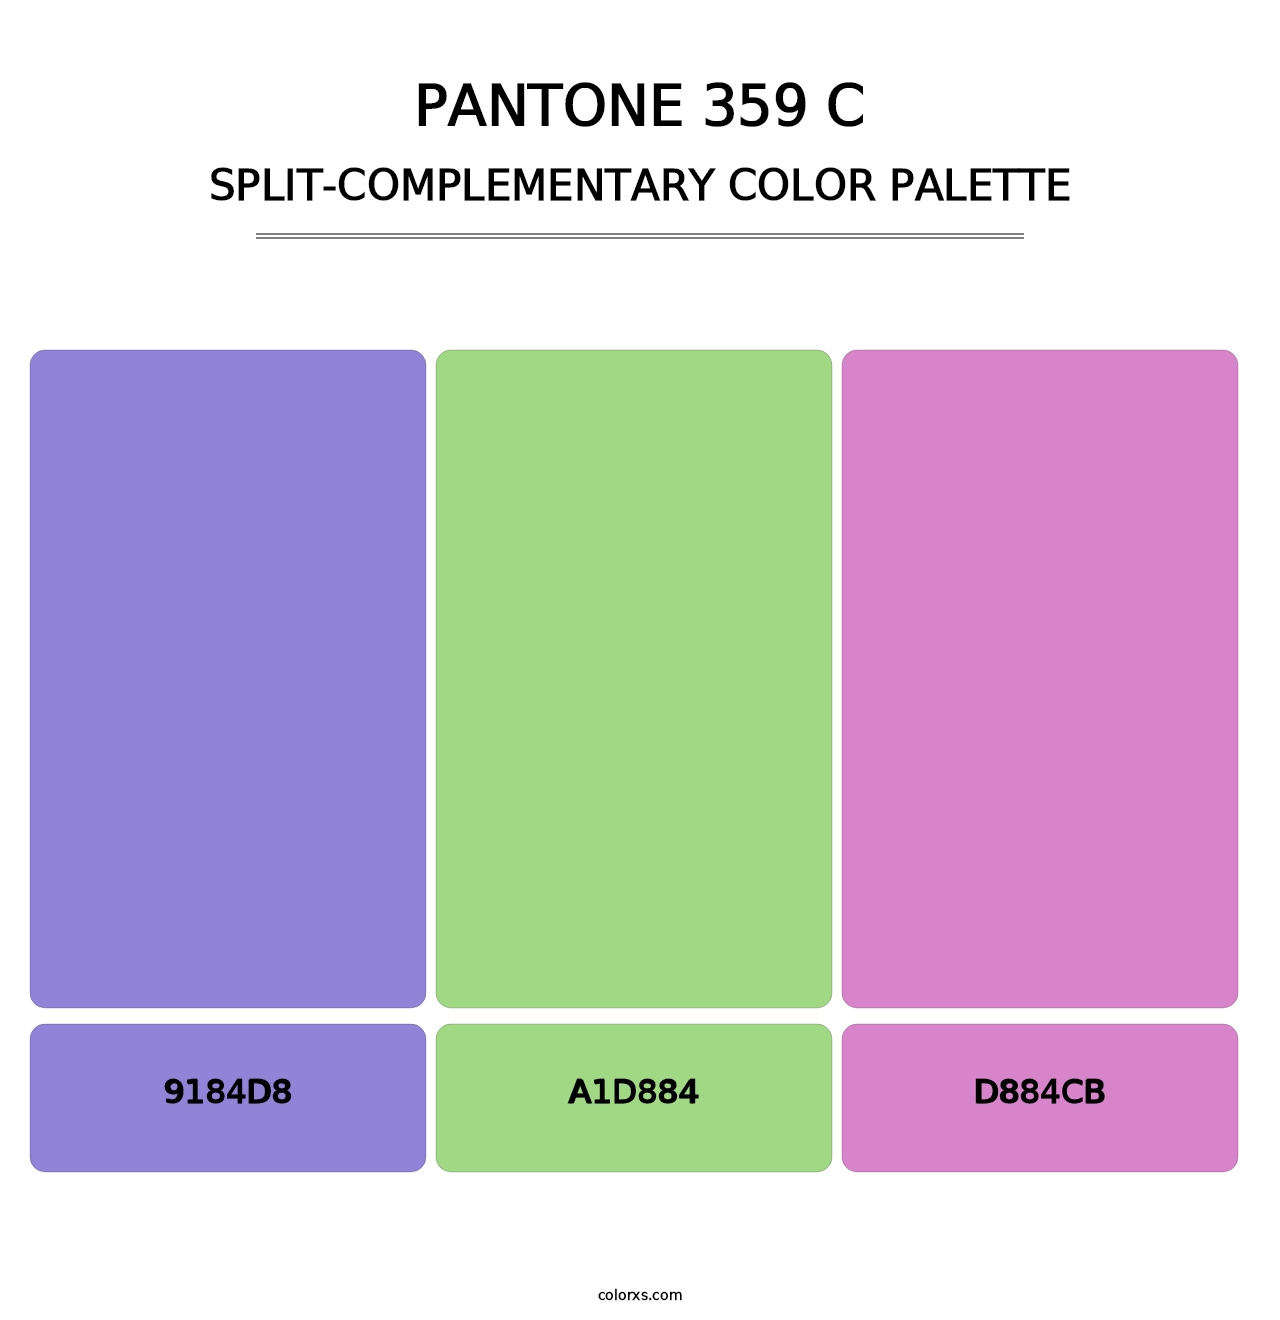 PANTONE 359 C - Split-Complementary Color Palette